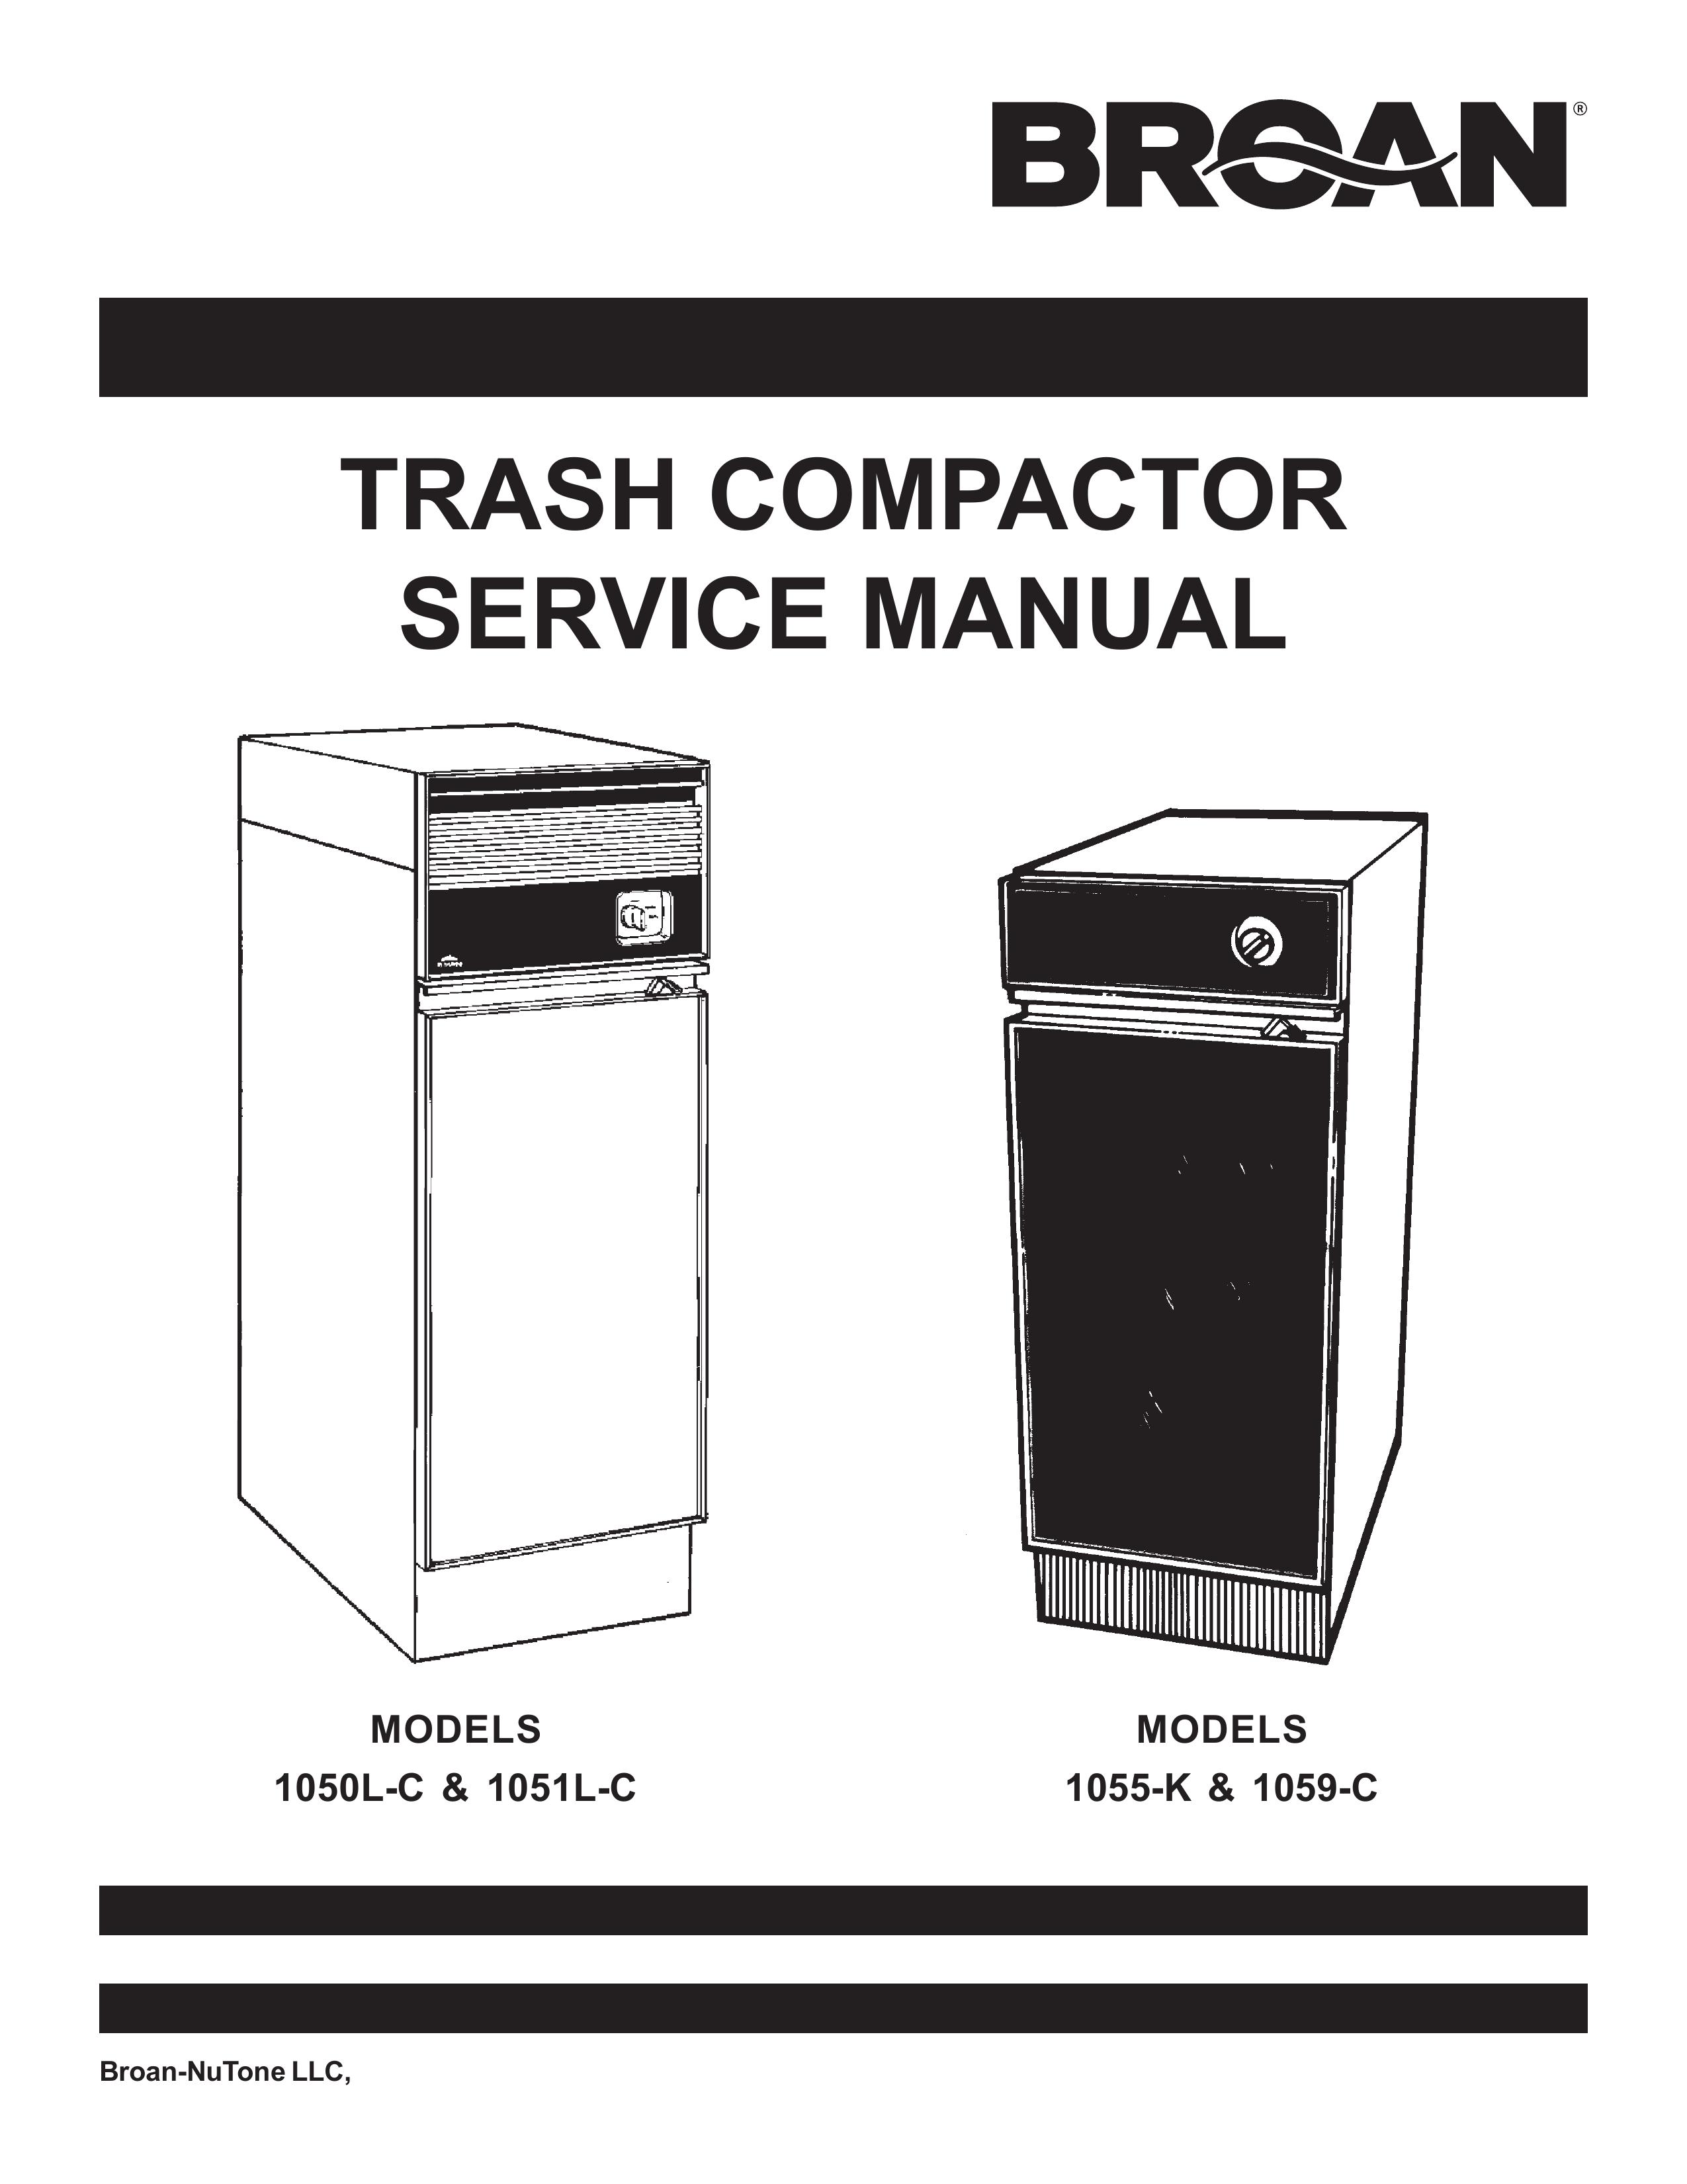 Broan 1055-K Trash Compactor User Manual